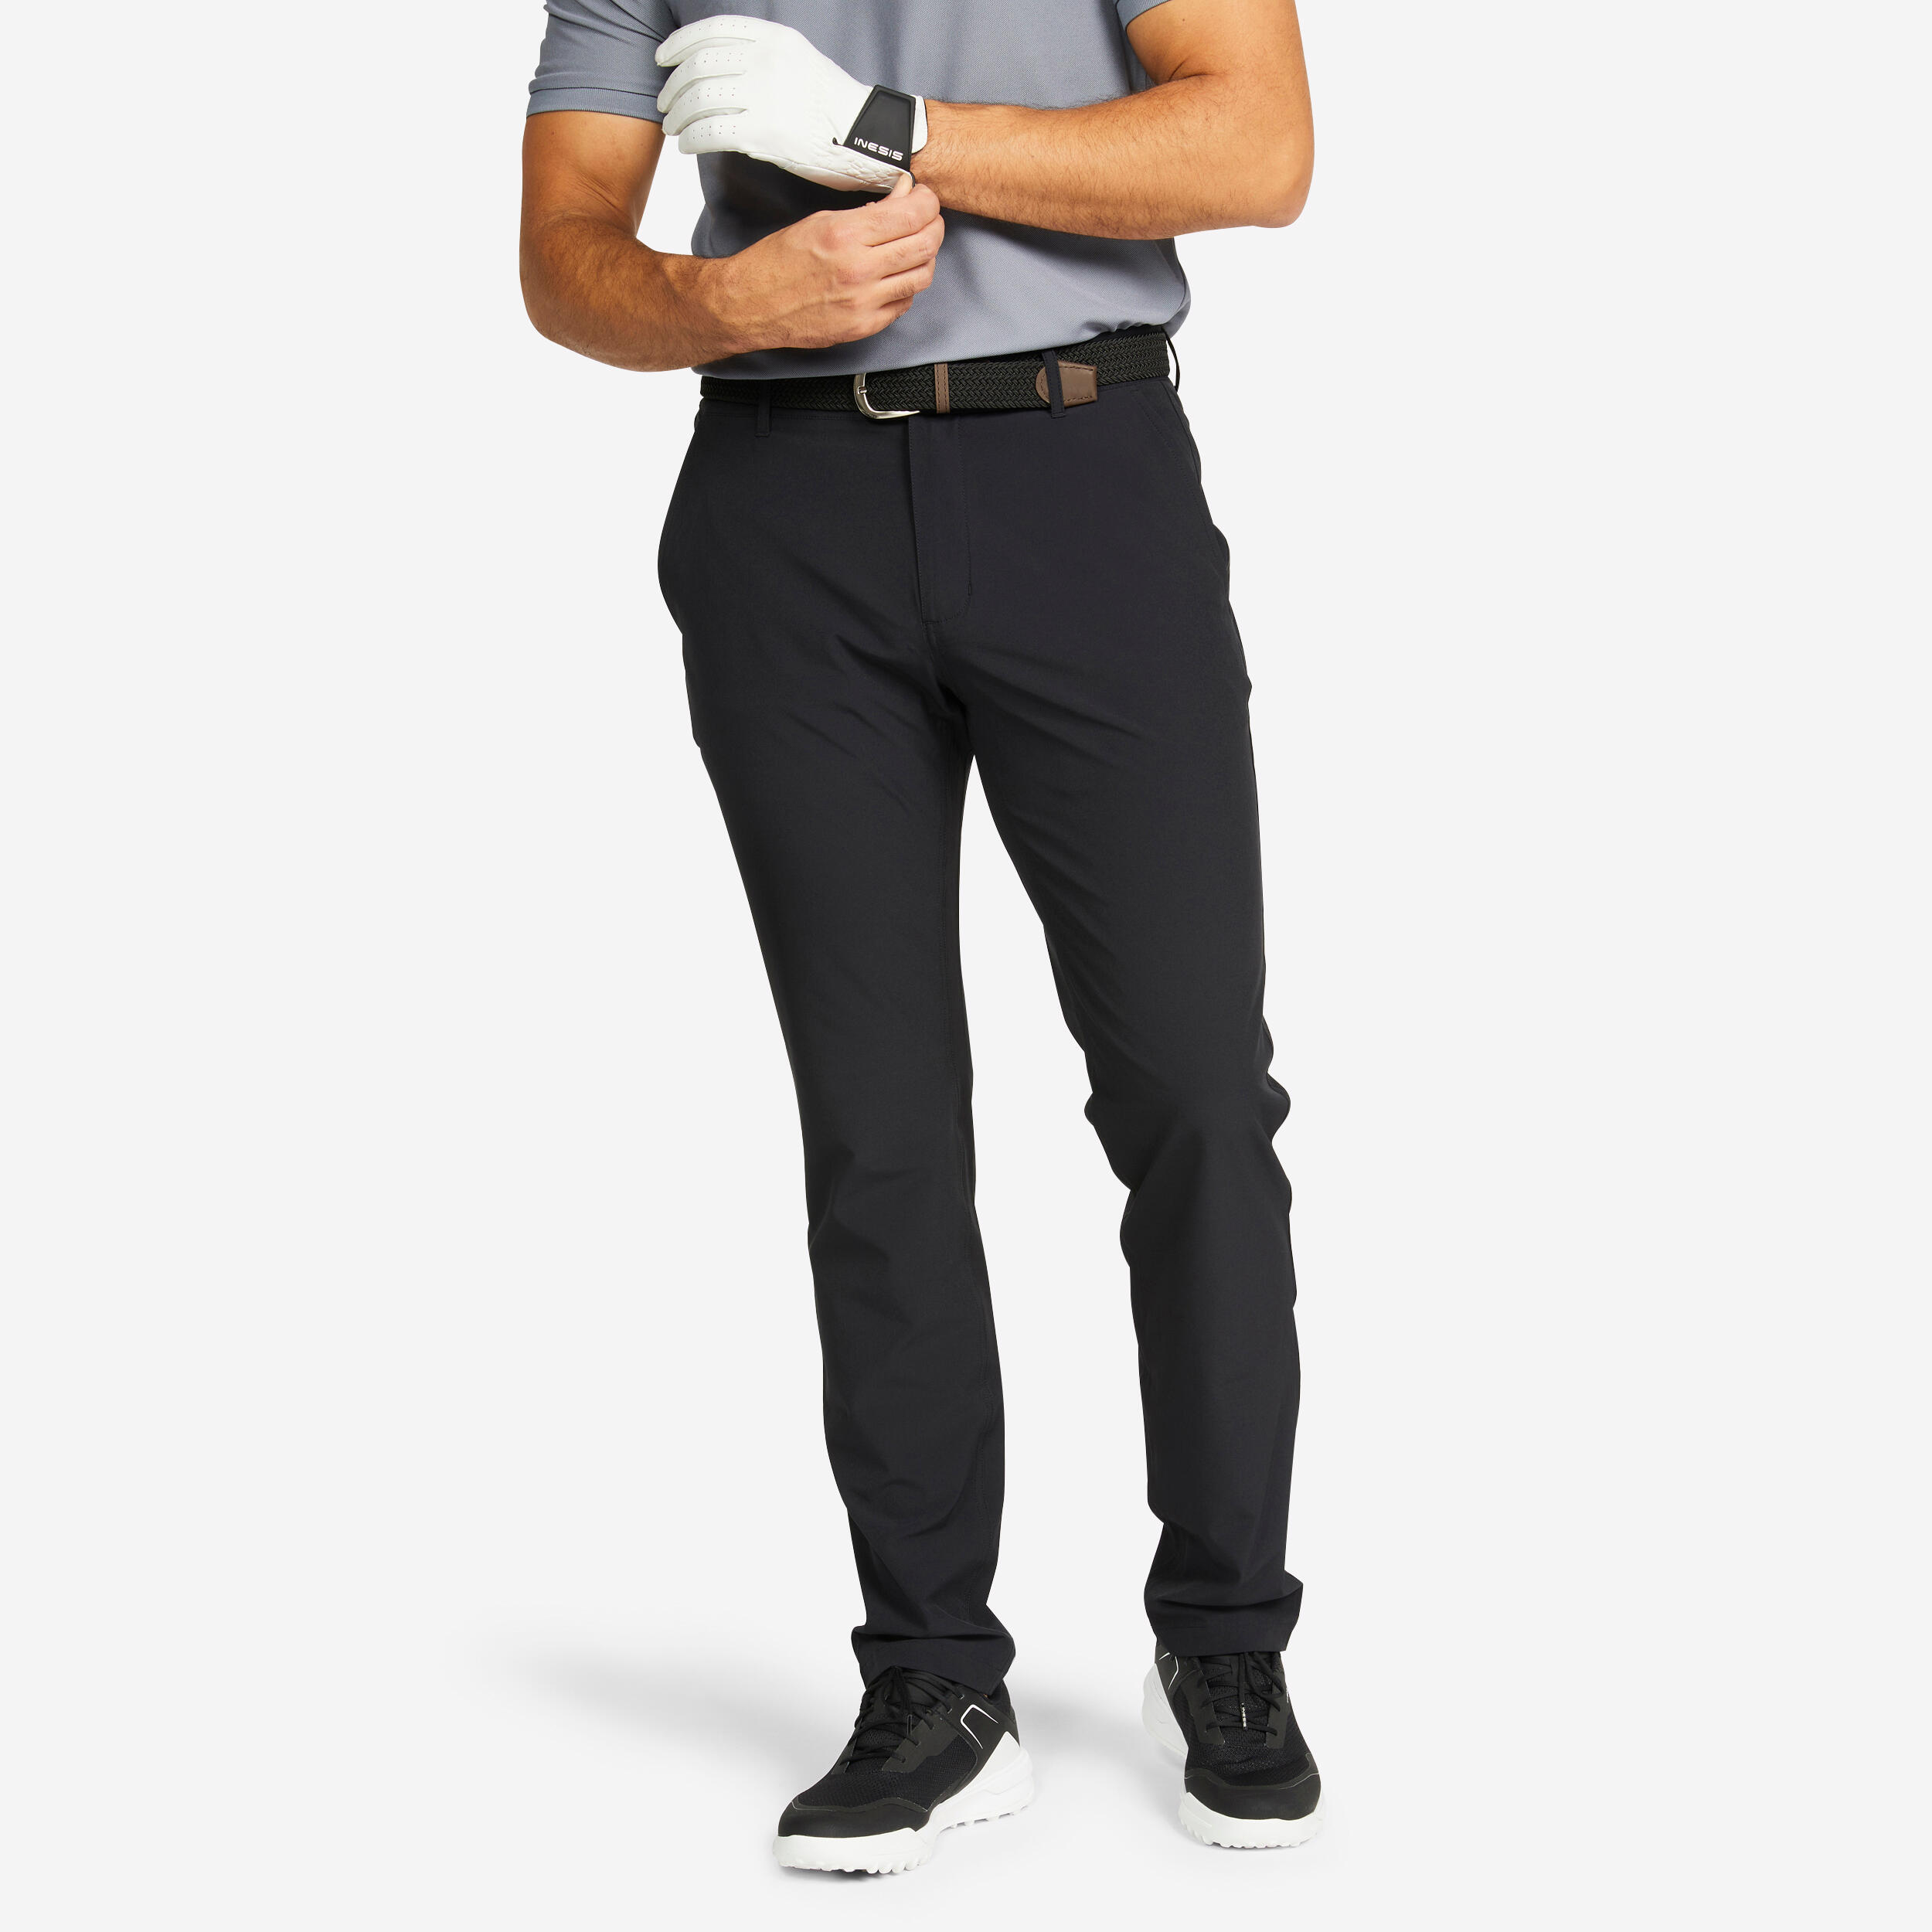 ZELOS Men 38X30 True Black Flat Front Performance Golf Pants NEW